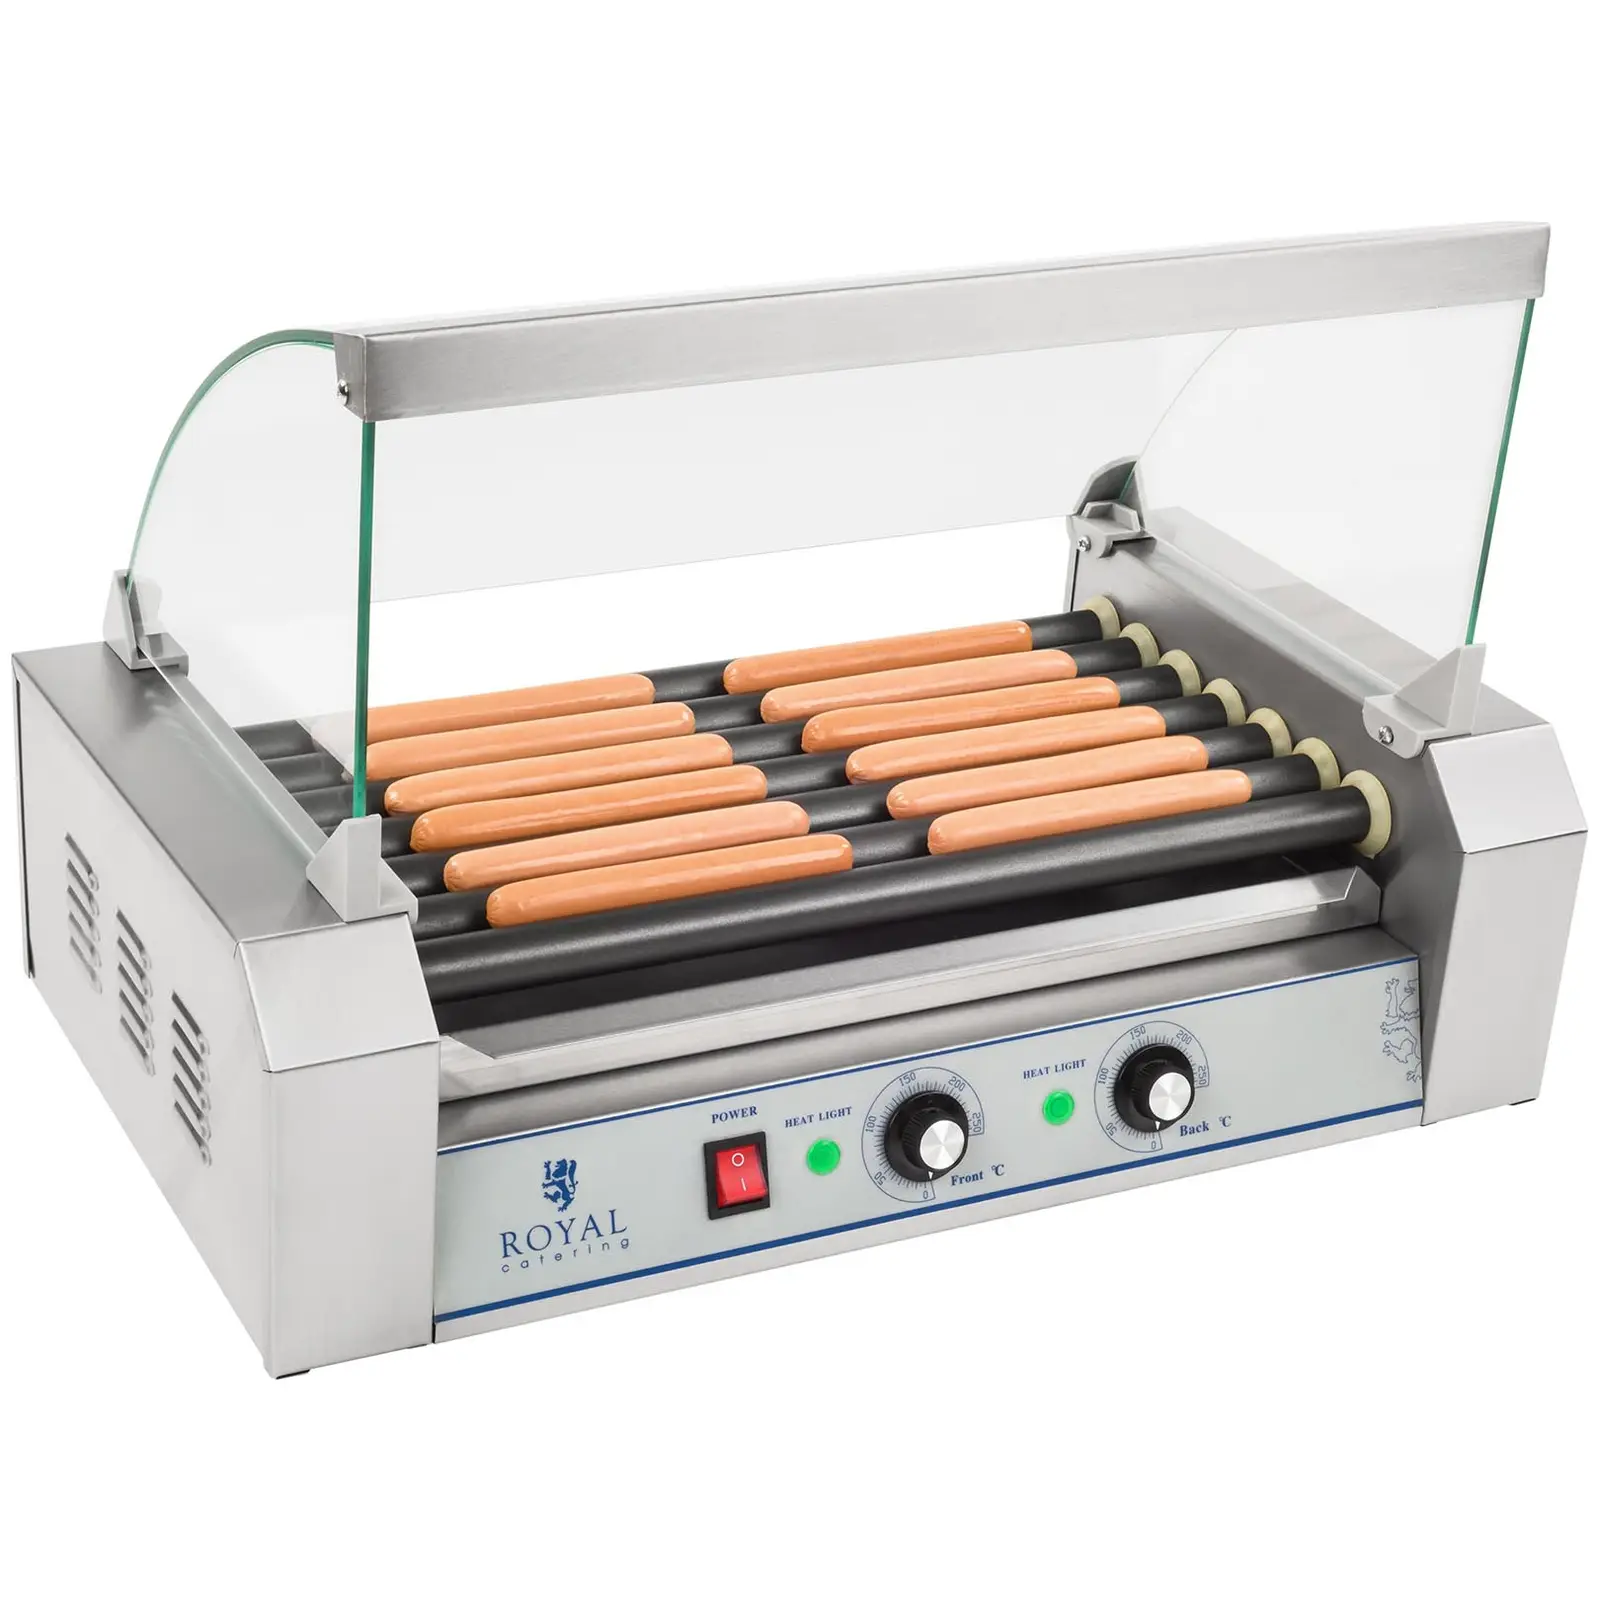 Hot dog grill - kolbász grill - 1400 W - 12 kolbászhoz